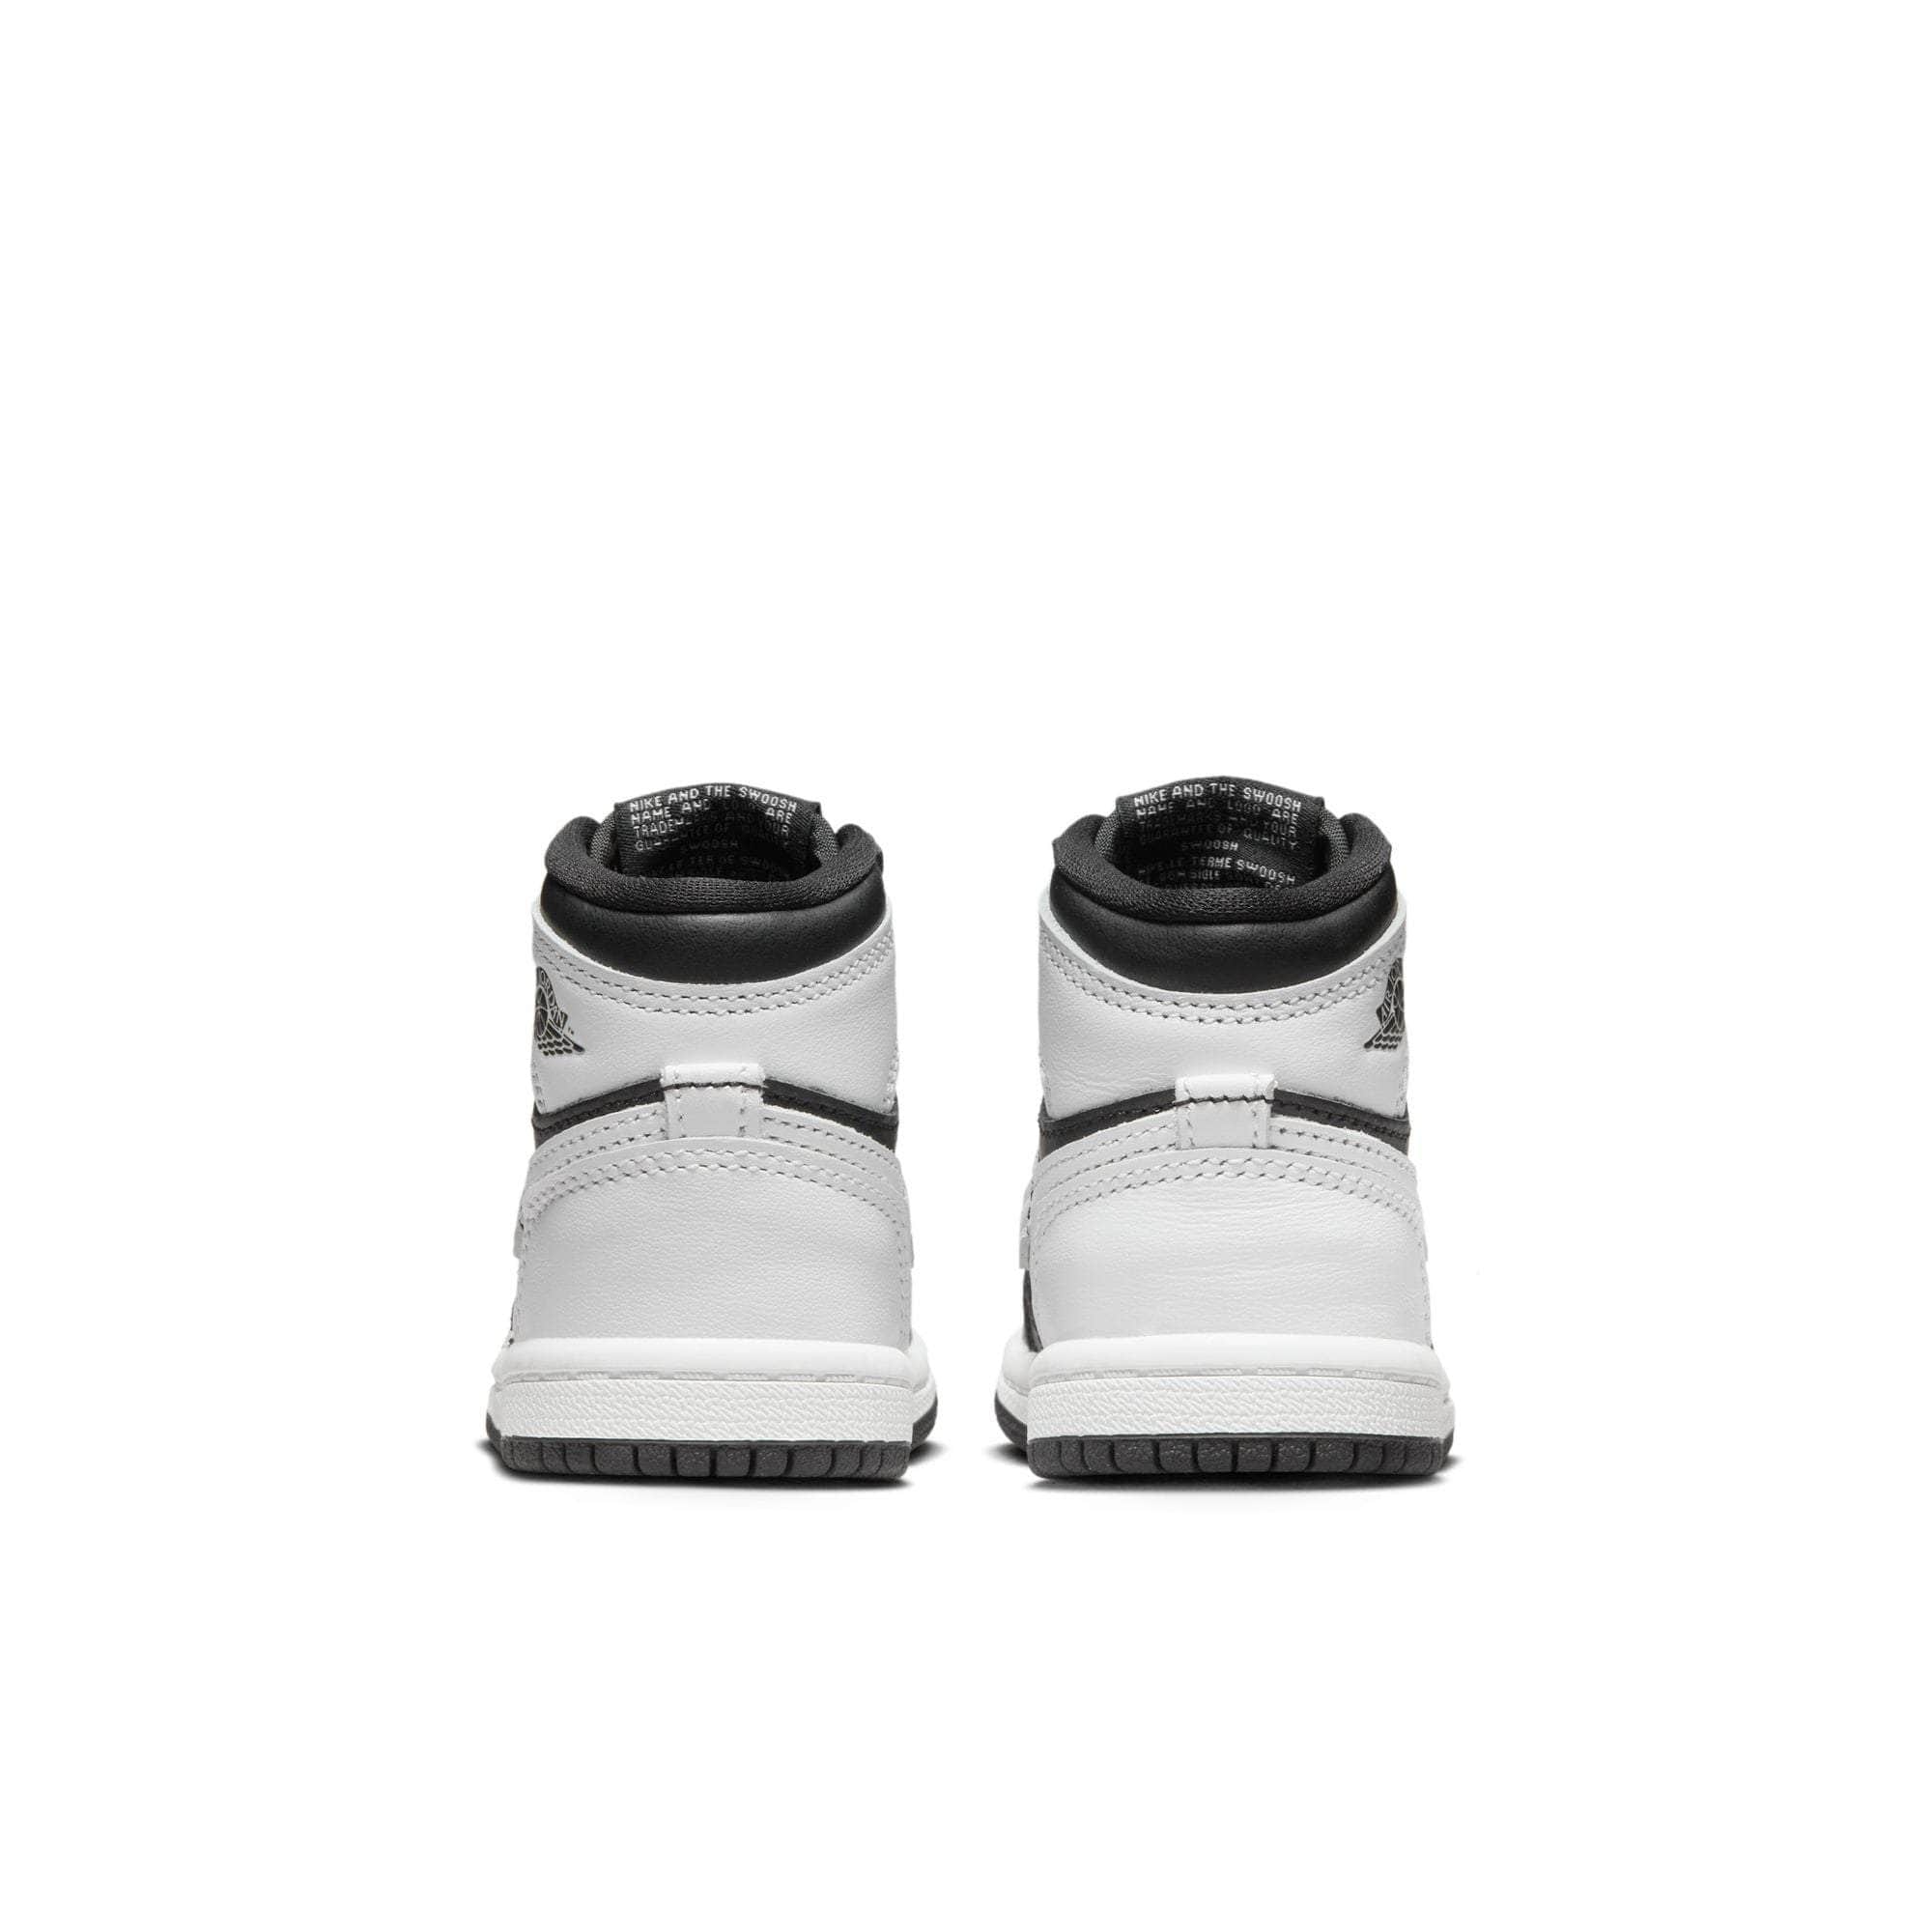 Air Jordan Footwear Air Jordan 1 Retro High OG "Reverse Panda" - Toddler's TD